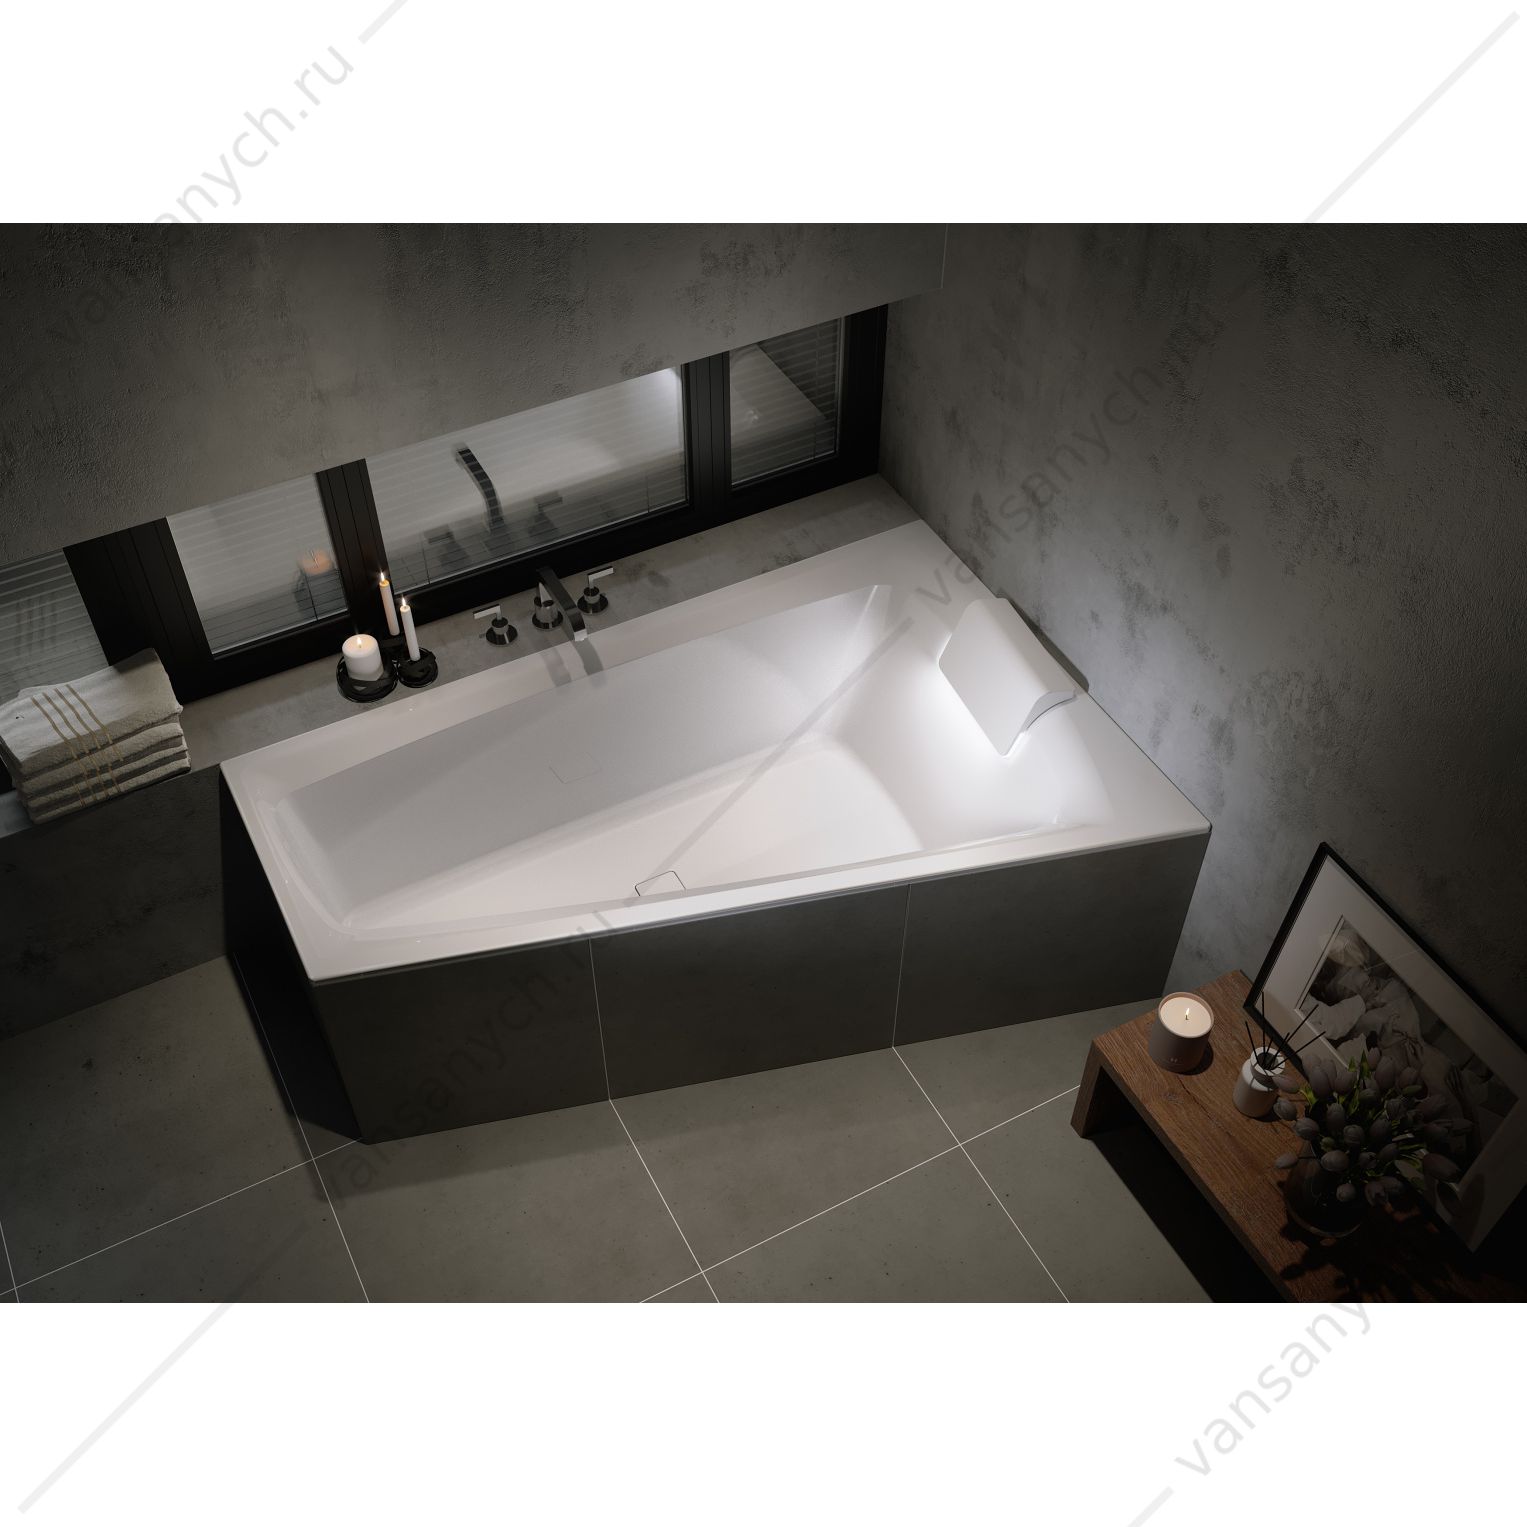 Ванна акриловая RIHO STILL SMART R 170x110, R асимметричная (вкл. сифон) RIHO (Чехия) купить в Тюмени (Ван Саныч™)